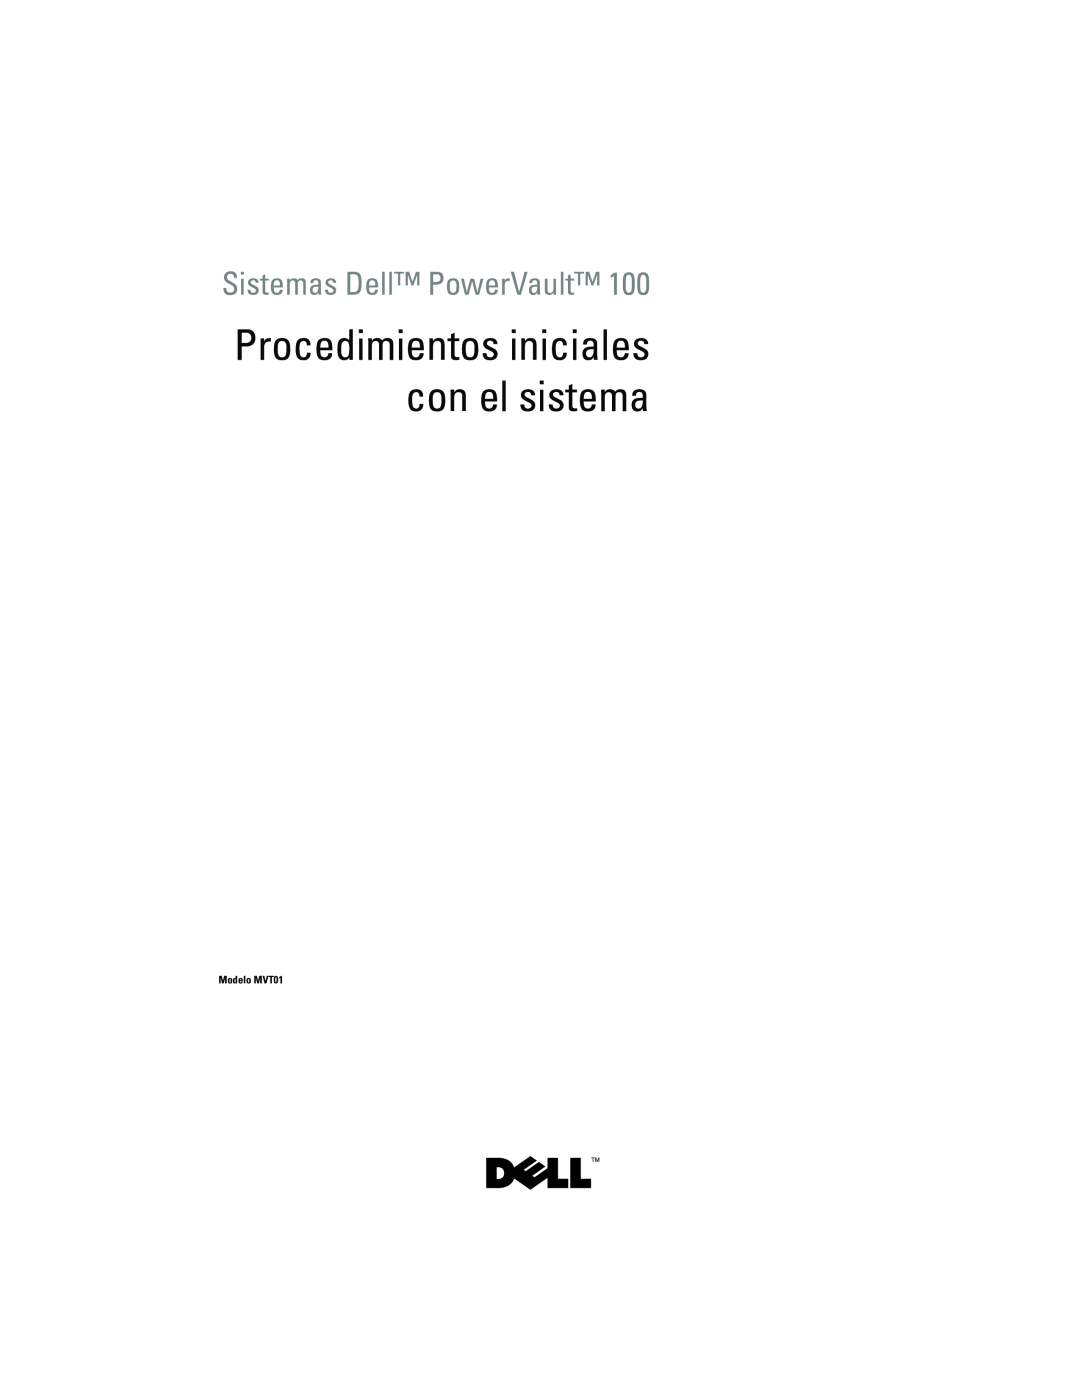 Dell JU892 manual Procedimientos iniciales con el sistema, Sistemas Dell PowerVault, Modelo MVT01 